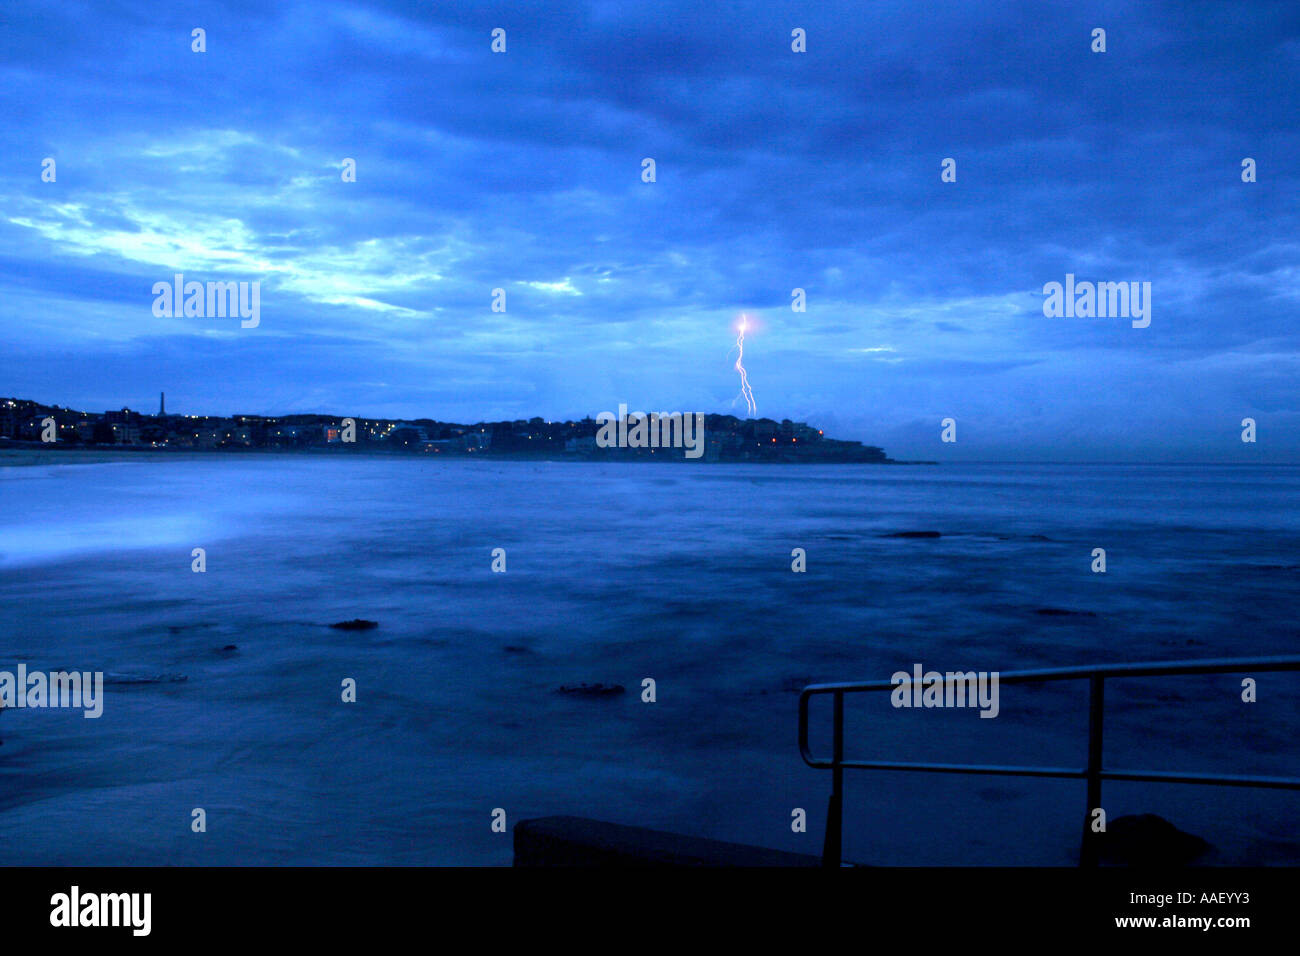 Lightning storm at Bondi Beach, Sydney Australia Stock Photo